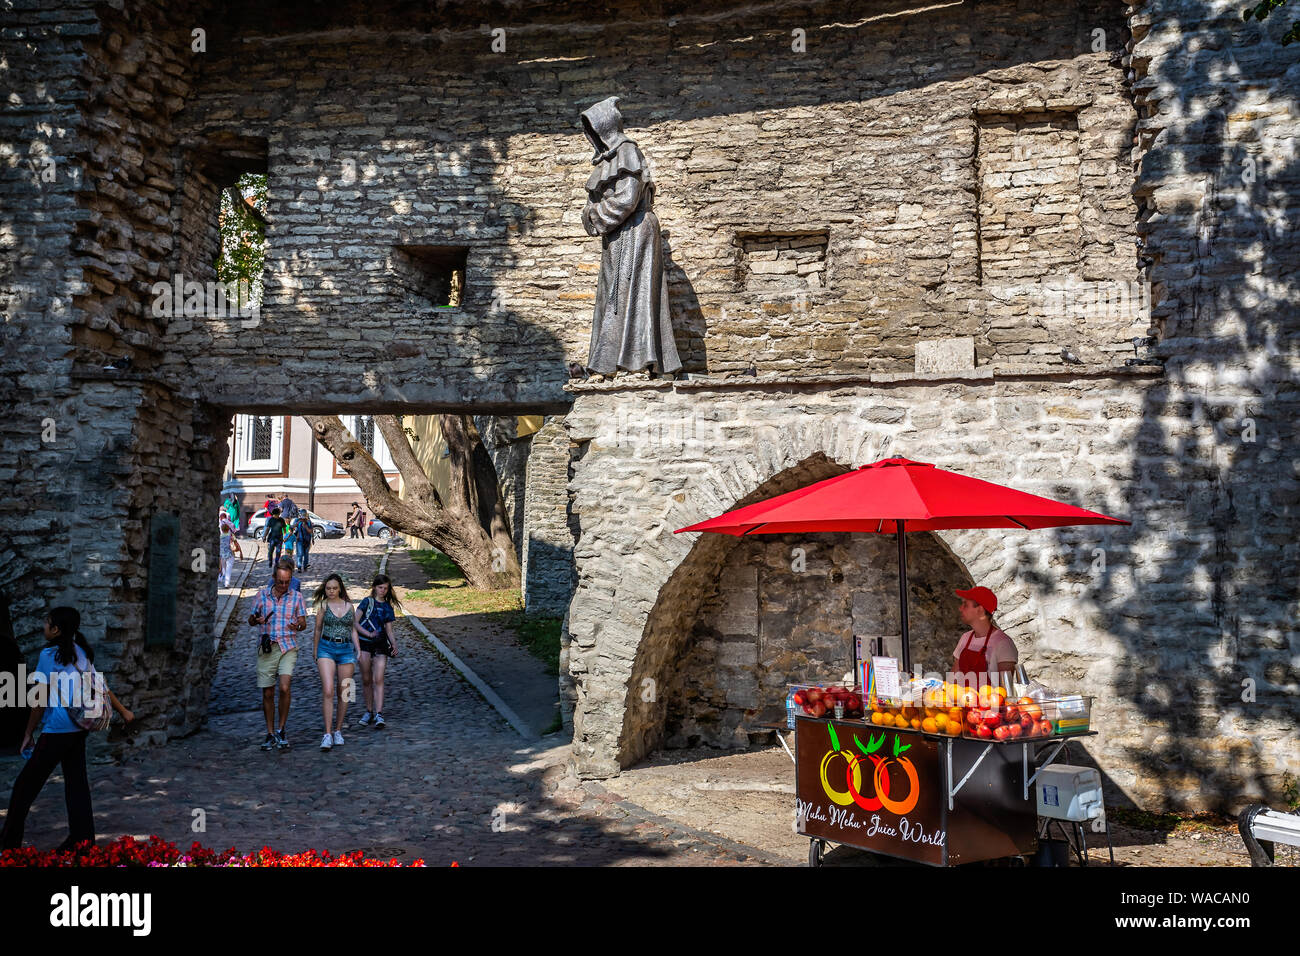 Statue de moine à capuchon sur les murs de la ville dans le jardin des rois danois entre les limites supérieure et inférieure des communes de Tallinn, Estonie le 21 juillet 2019 Banque D'Images